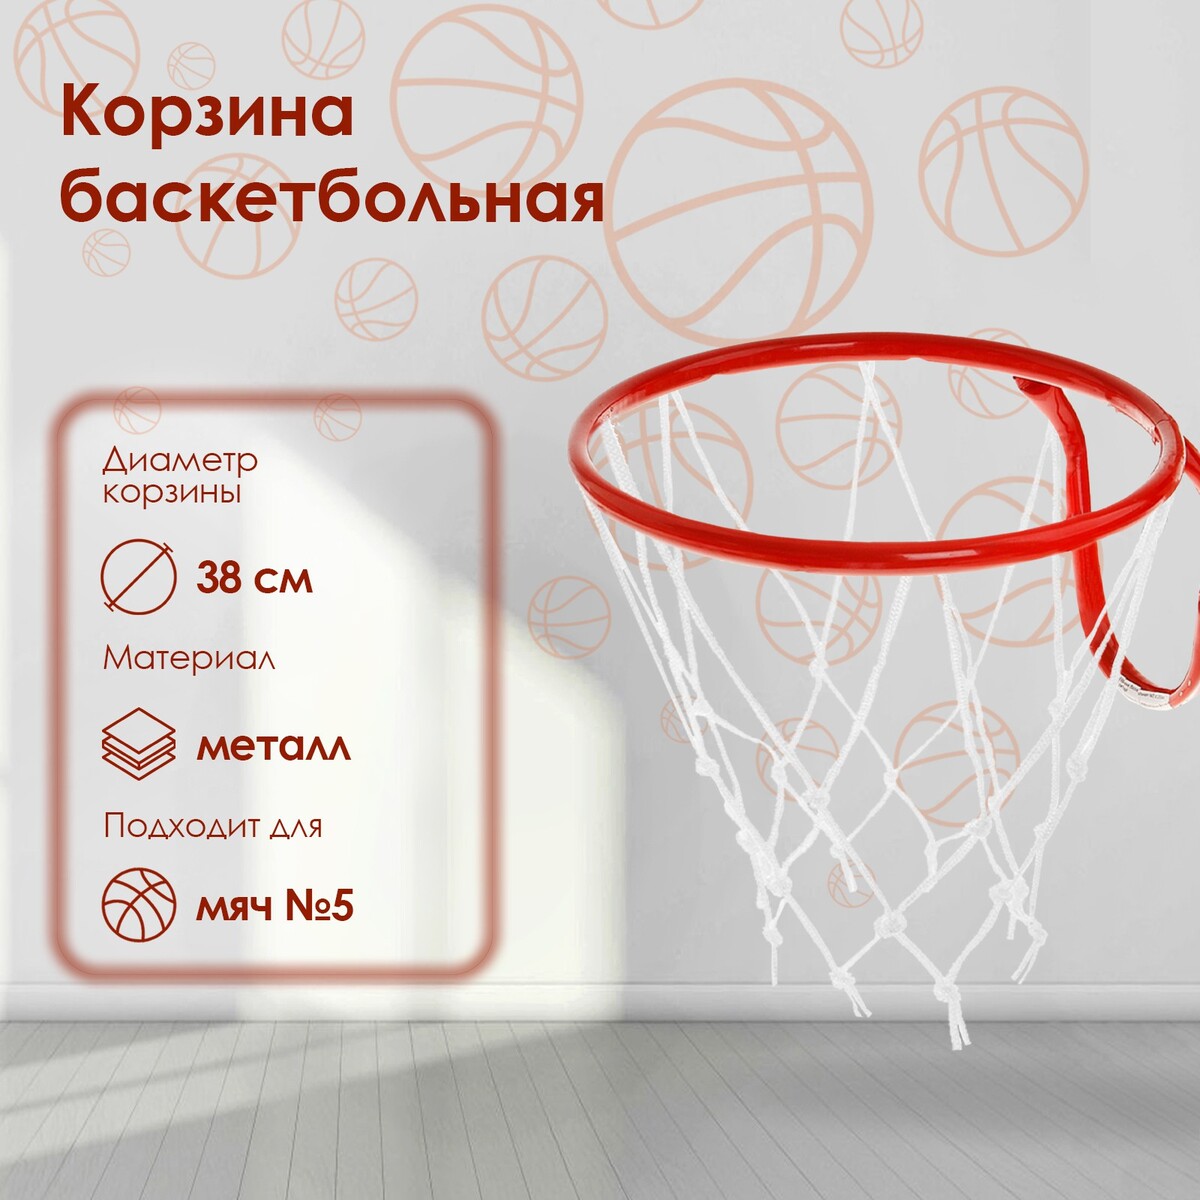 Корзина баскетбольная №5, d=380 мм, с сеткой кольцо баскетбольное 5 с сеткой кб5